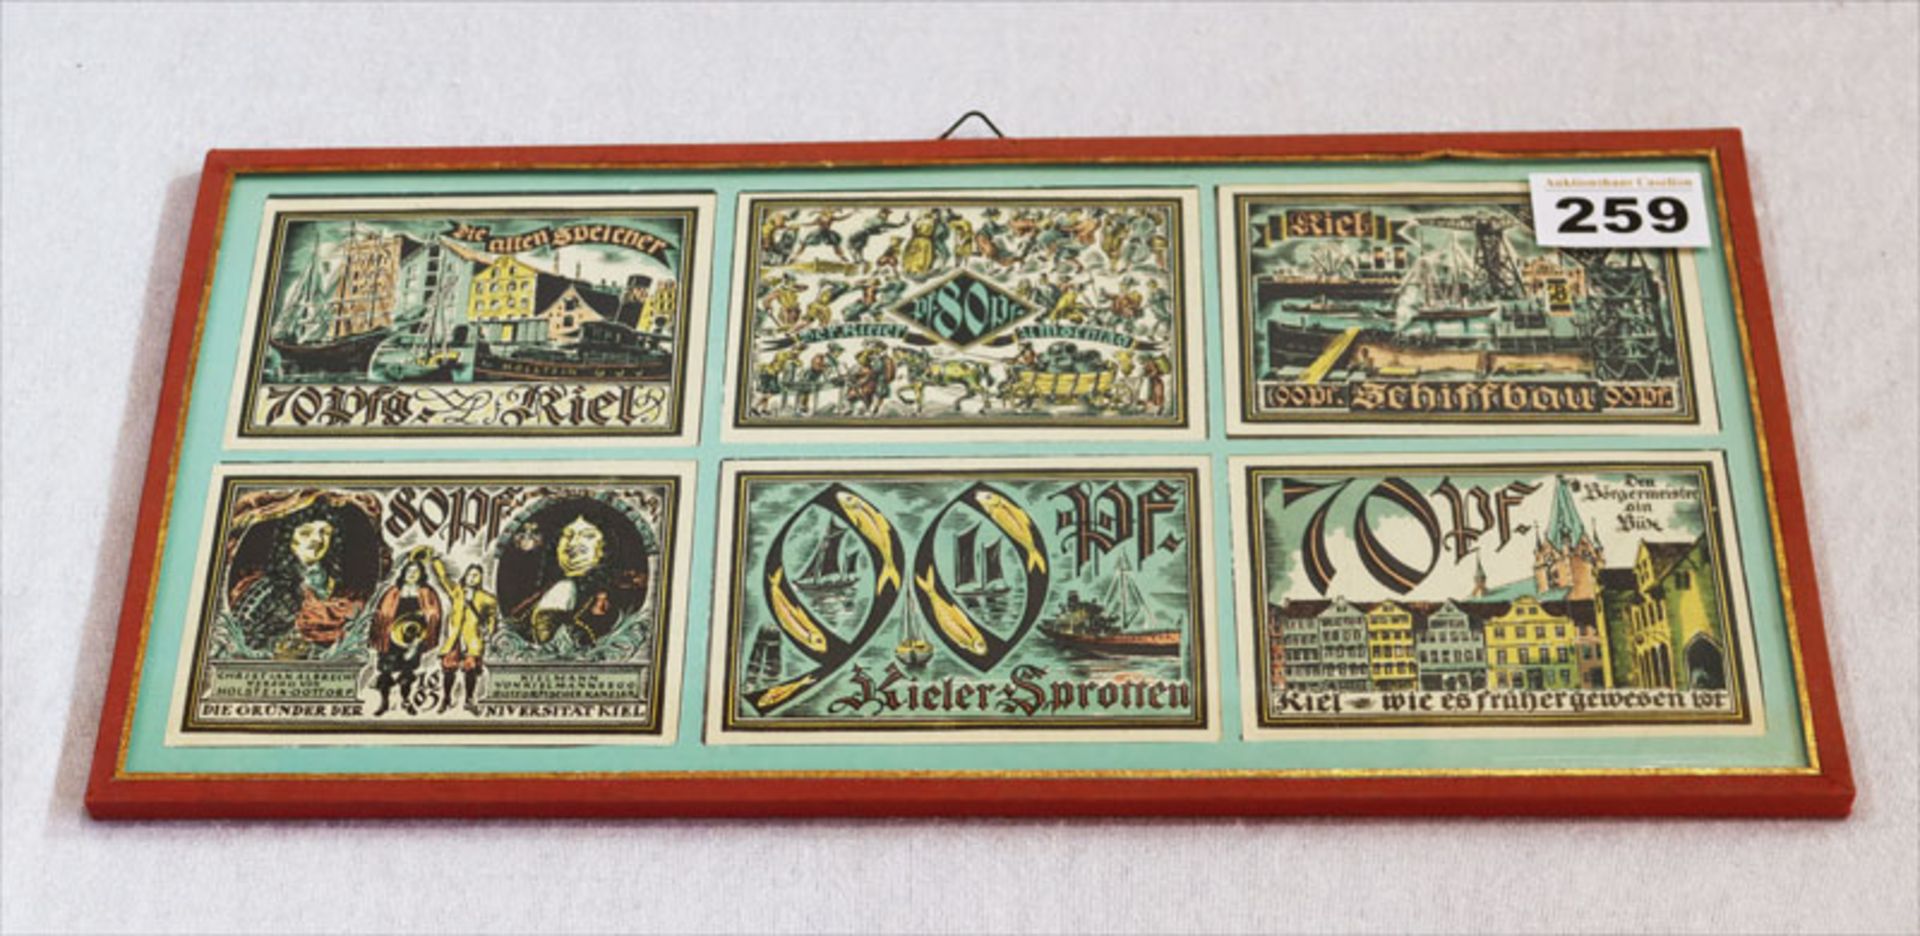 Sammlung von Notgeldscheinen von Kiel, doppelt verglast, 17,5 cm x 35 cm